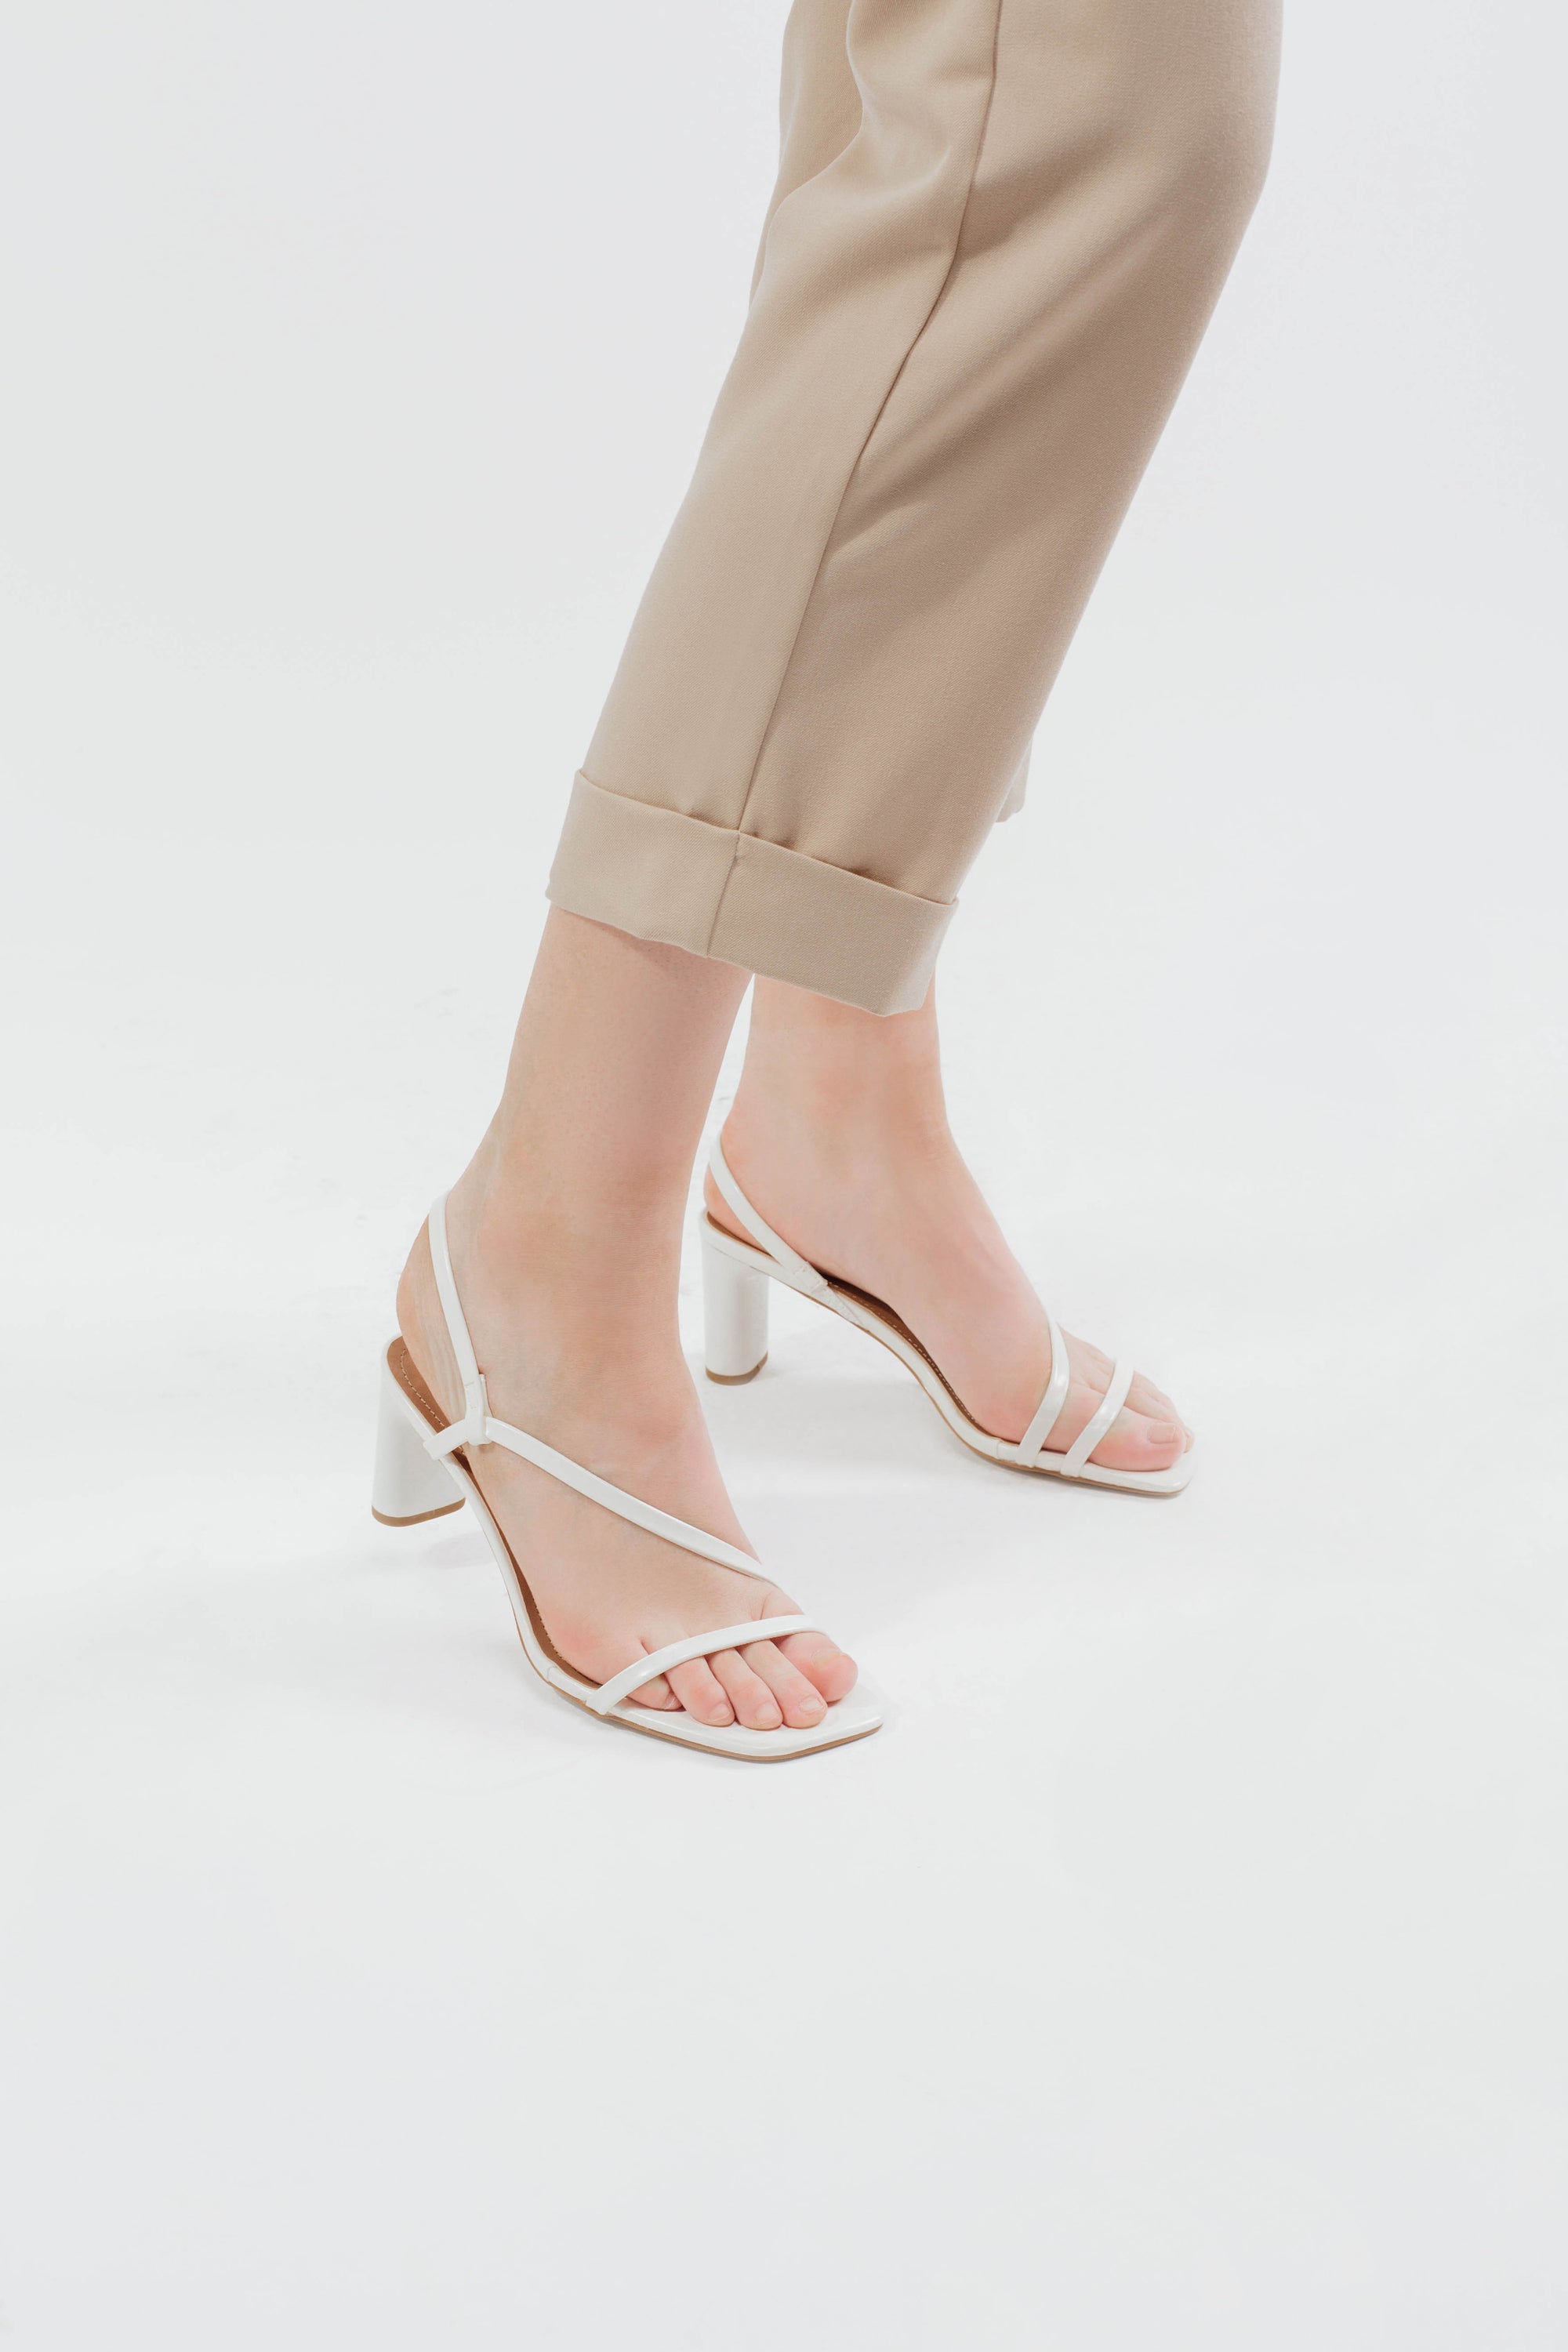 Faye Heels in White